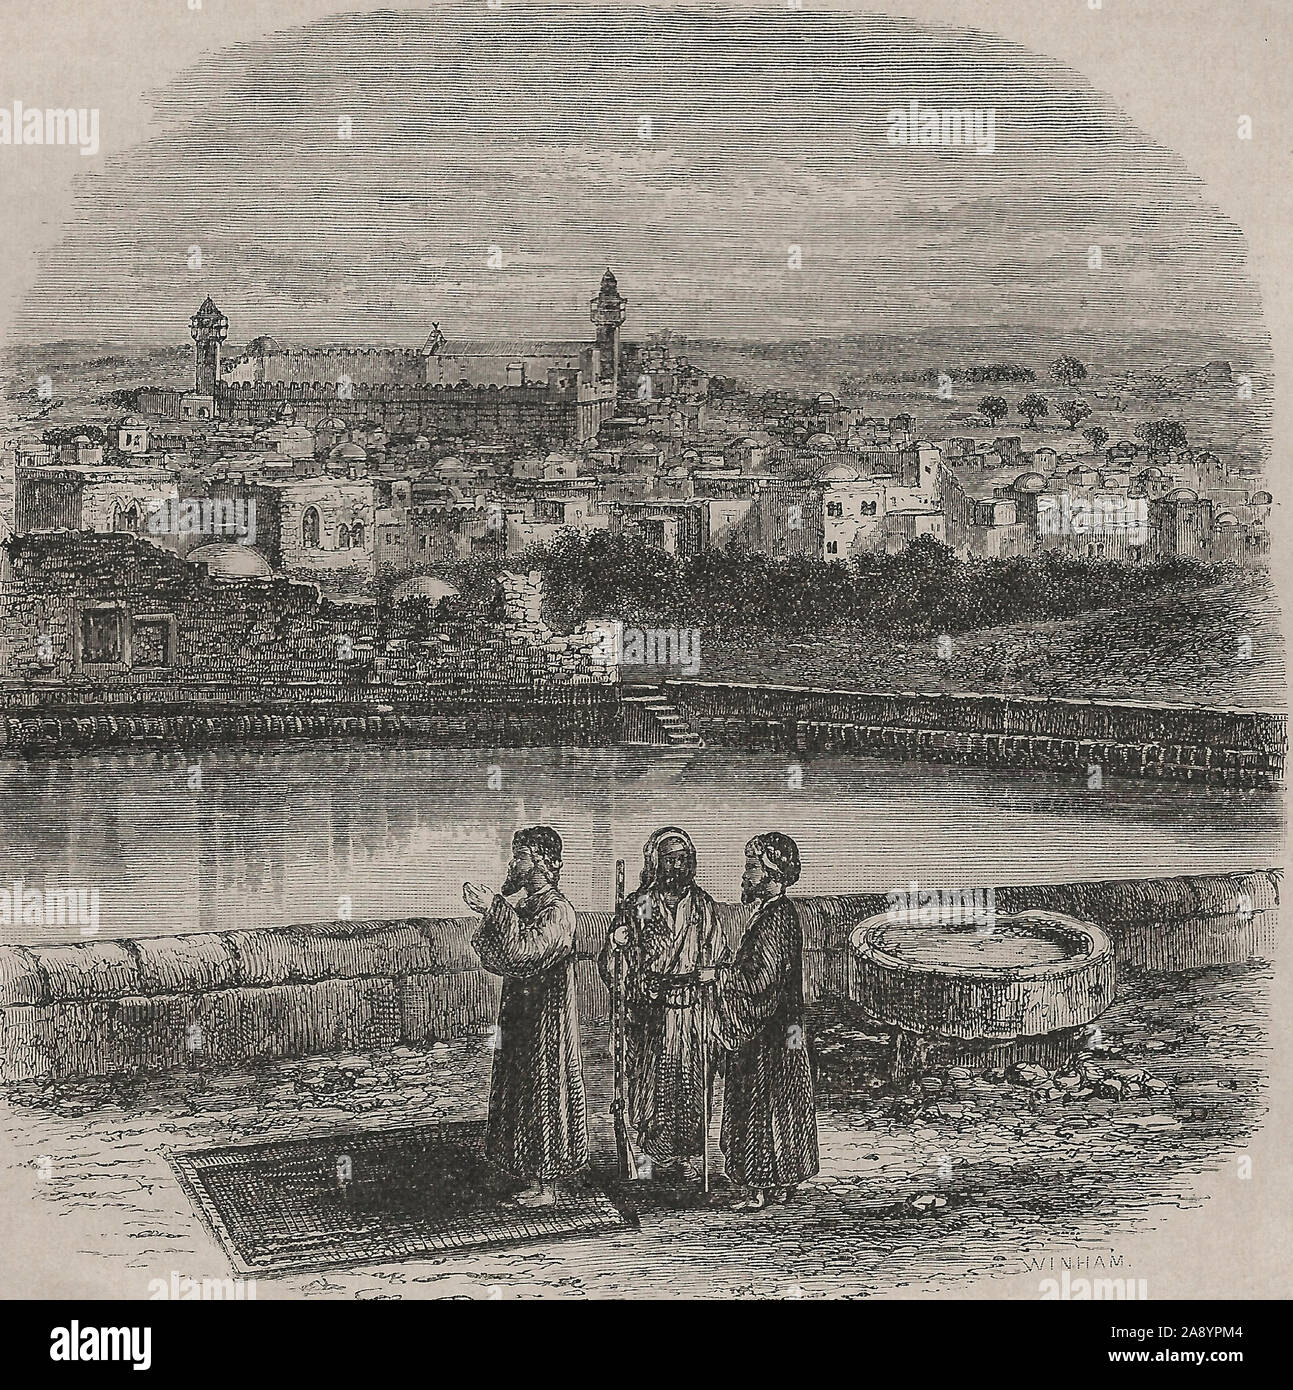 Piscina inferiore di Hebron, Palestina, circa 1880 Foto Stock